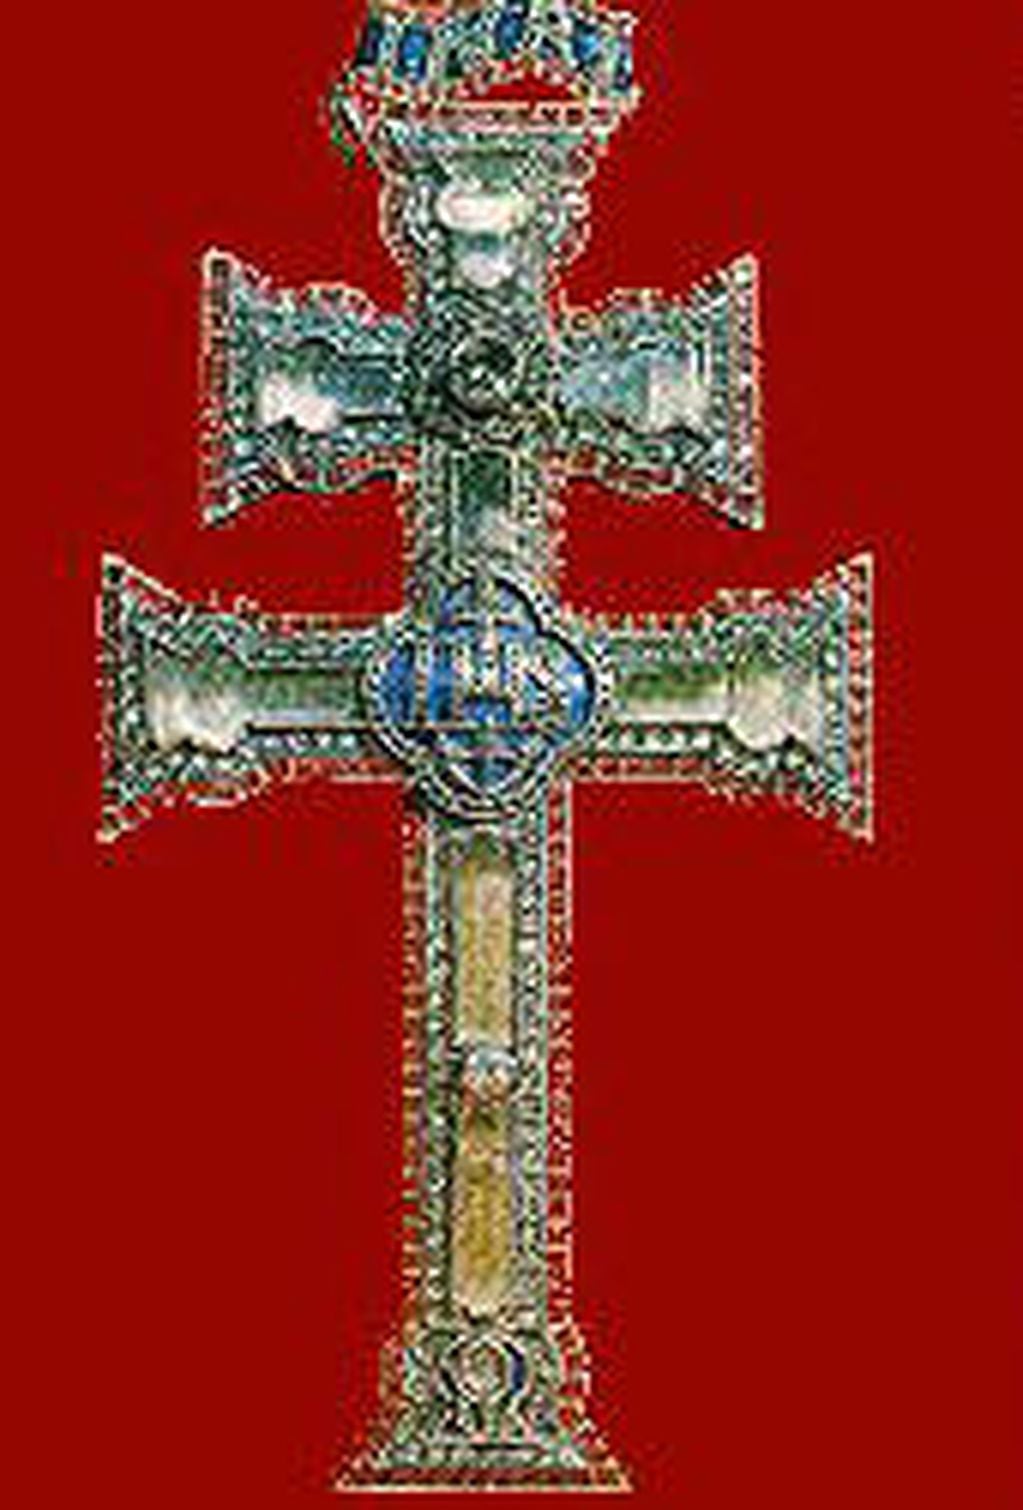 La Cruz de Caravaca, un elemento asociaco a la protección dentro de los rituales y la magia negra. Foto: Wikipedia.